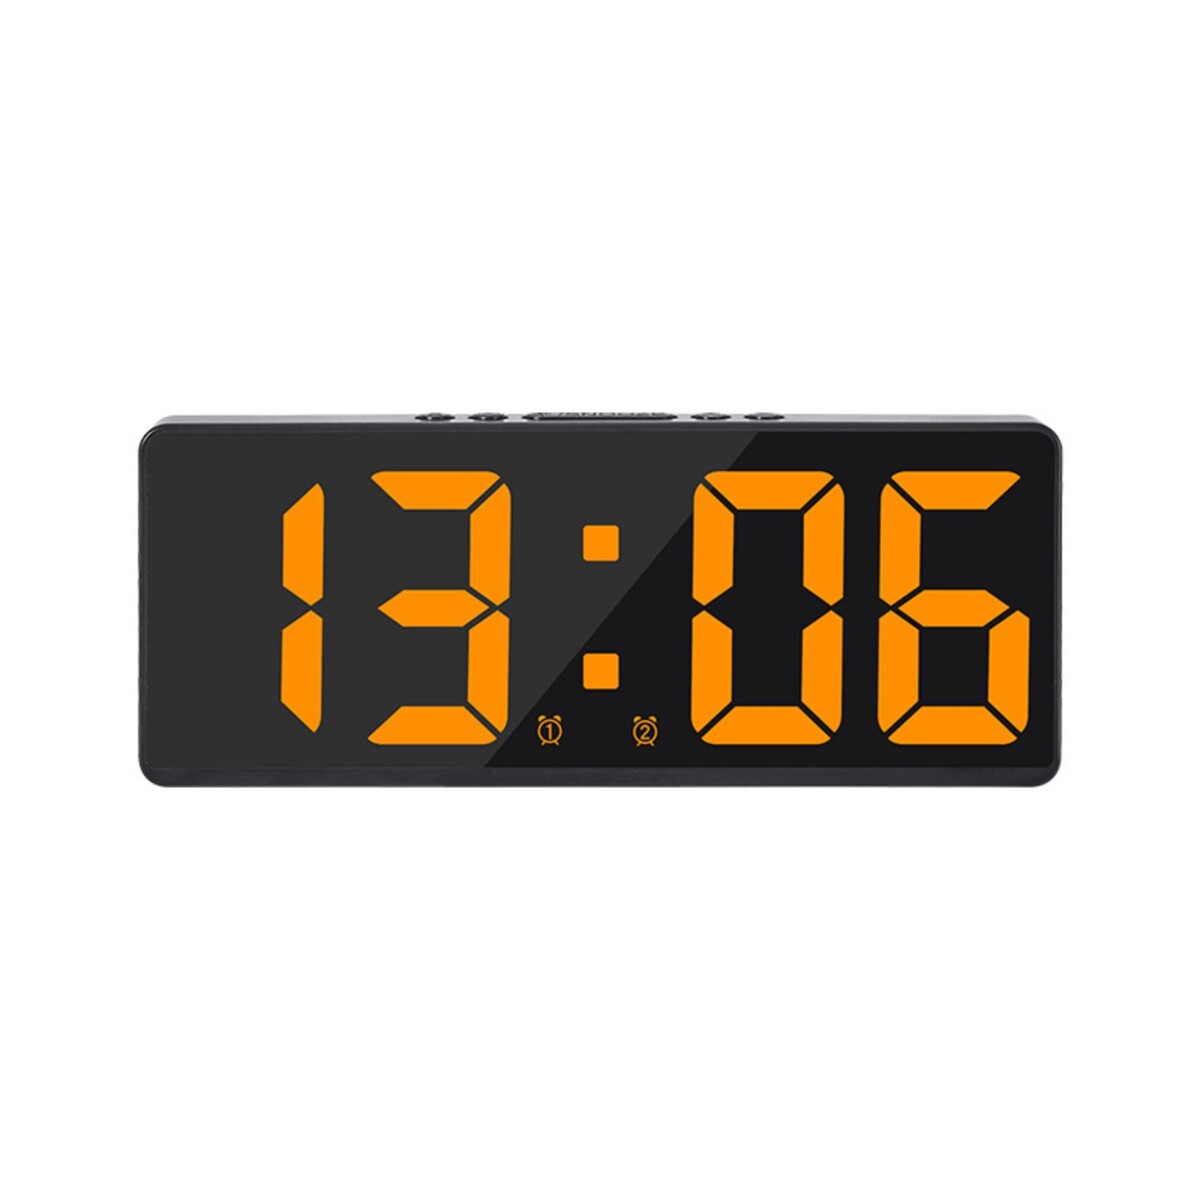 Часы - будильник электронные настольные с термометром, календарем, 15 х 6.3 см, ааа, usb часы электронные настенные настольные